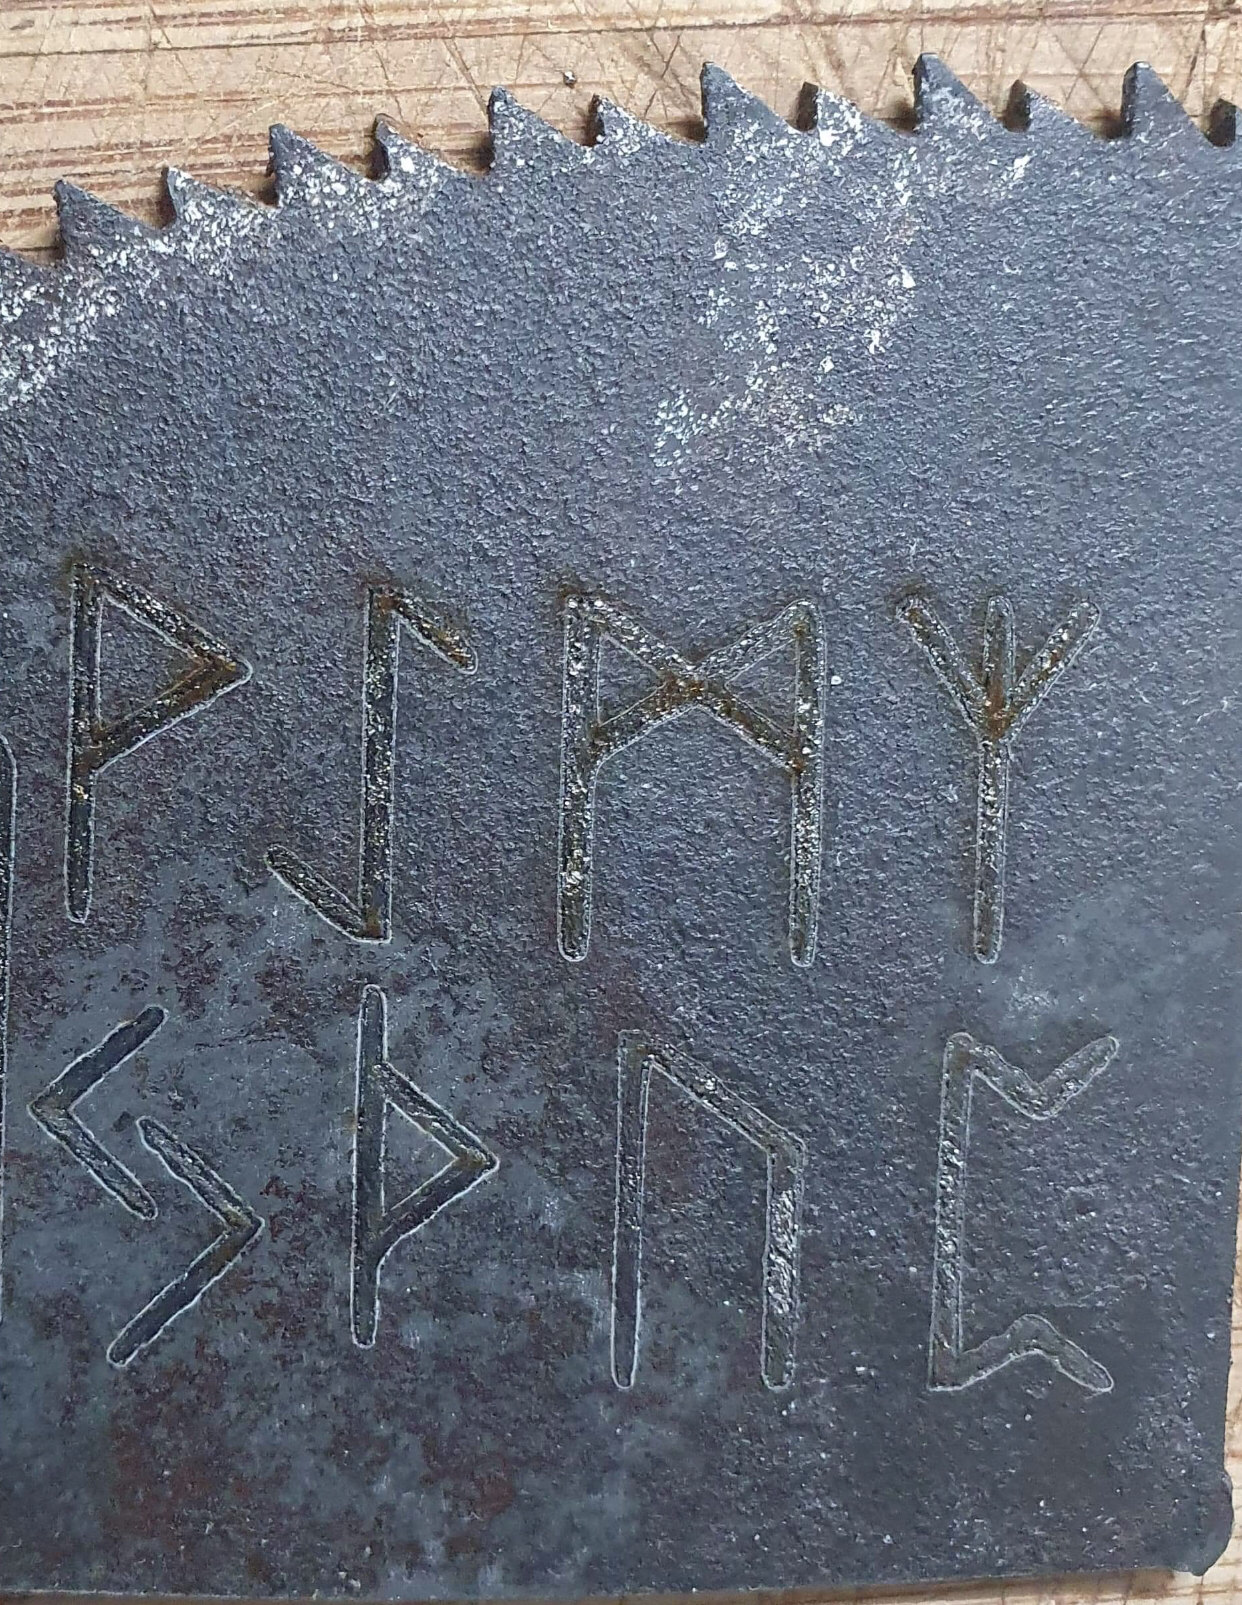 Laser engraving runes on steel